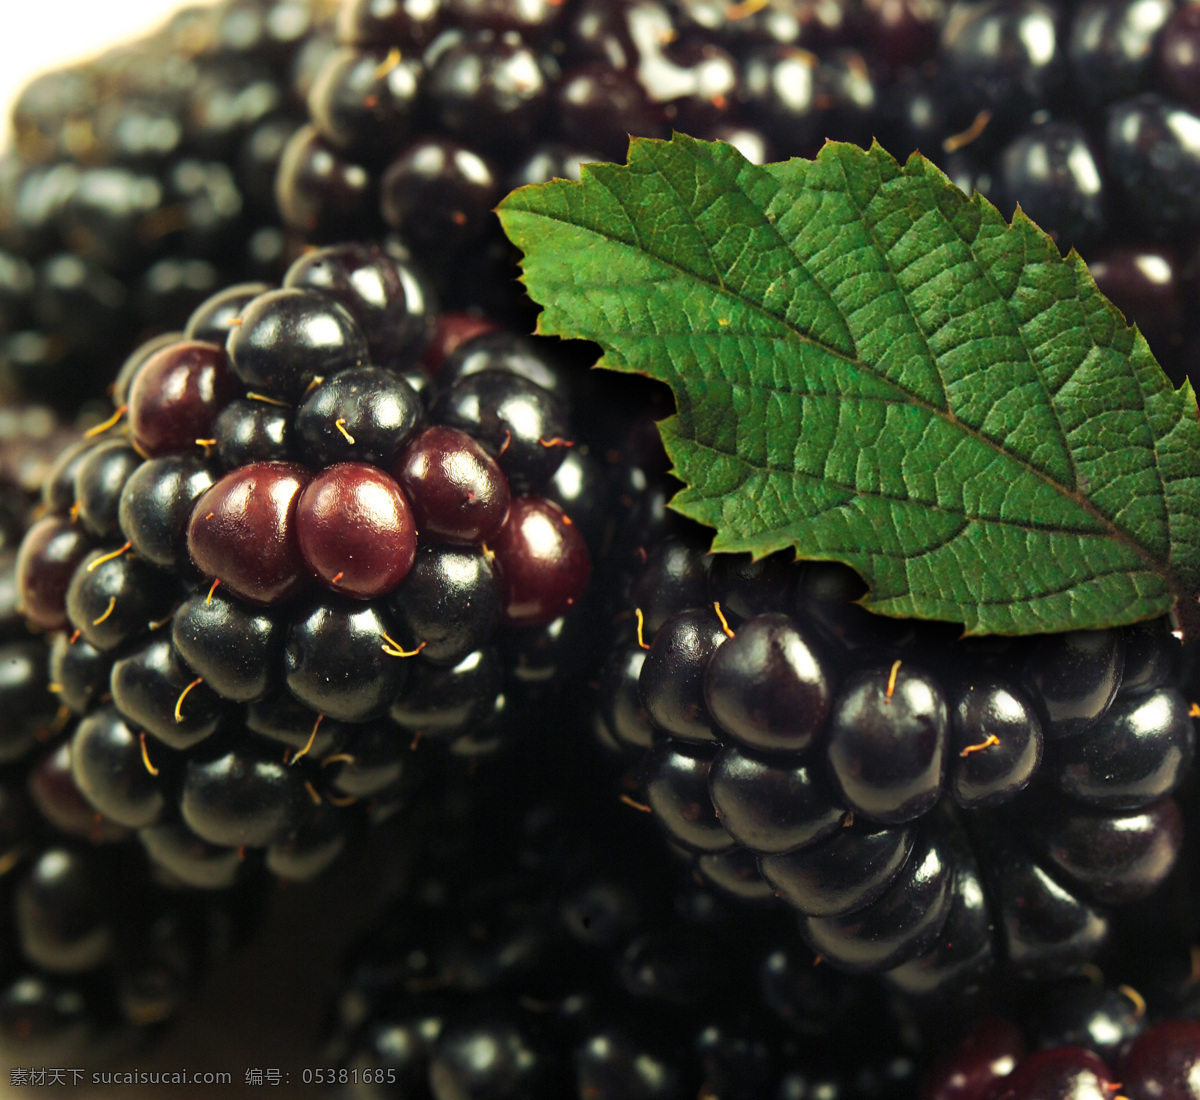 黑莓 blackberry 露莓 紫黑 深紫 紫色 黑色 果实 水果 树叶 生物世界 摄影图库